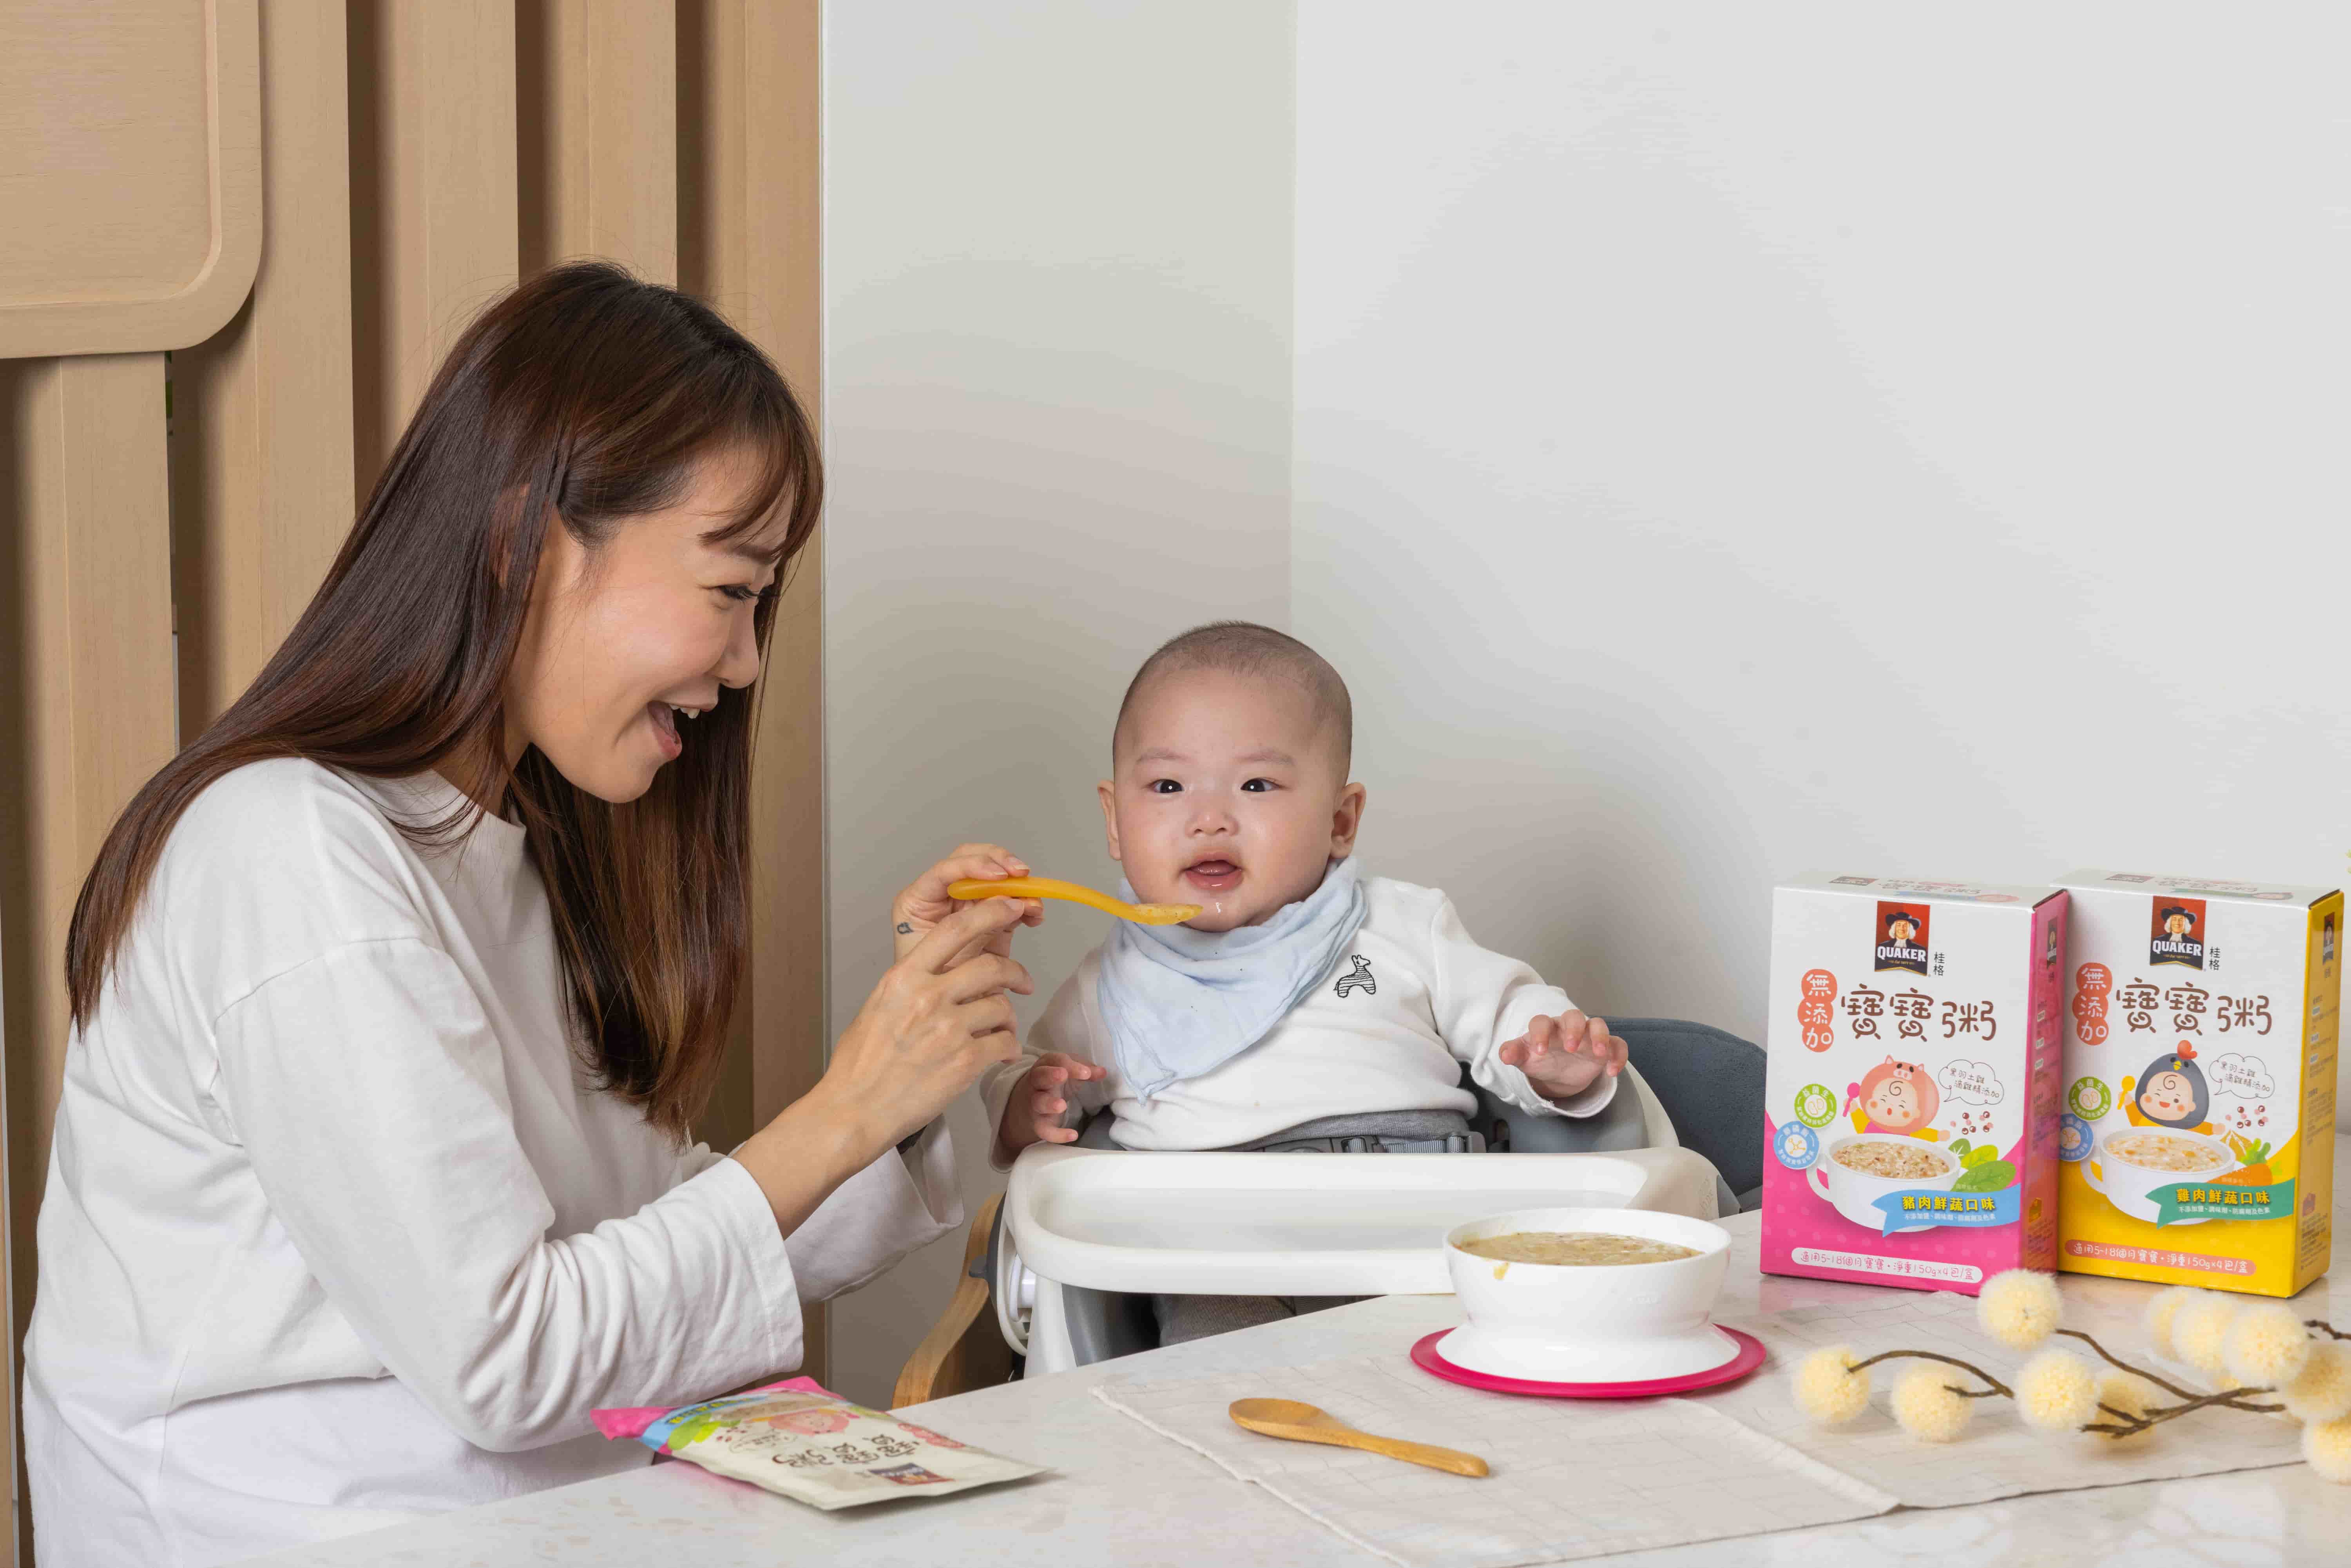 桂格最懂媽媽心新品「無添加寶寶粥」好食材嚐鮮上市營養科學為後盾時尚